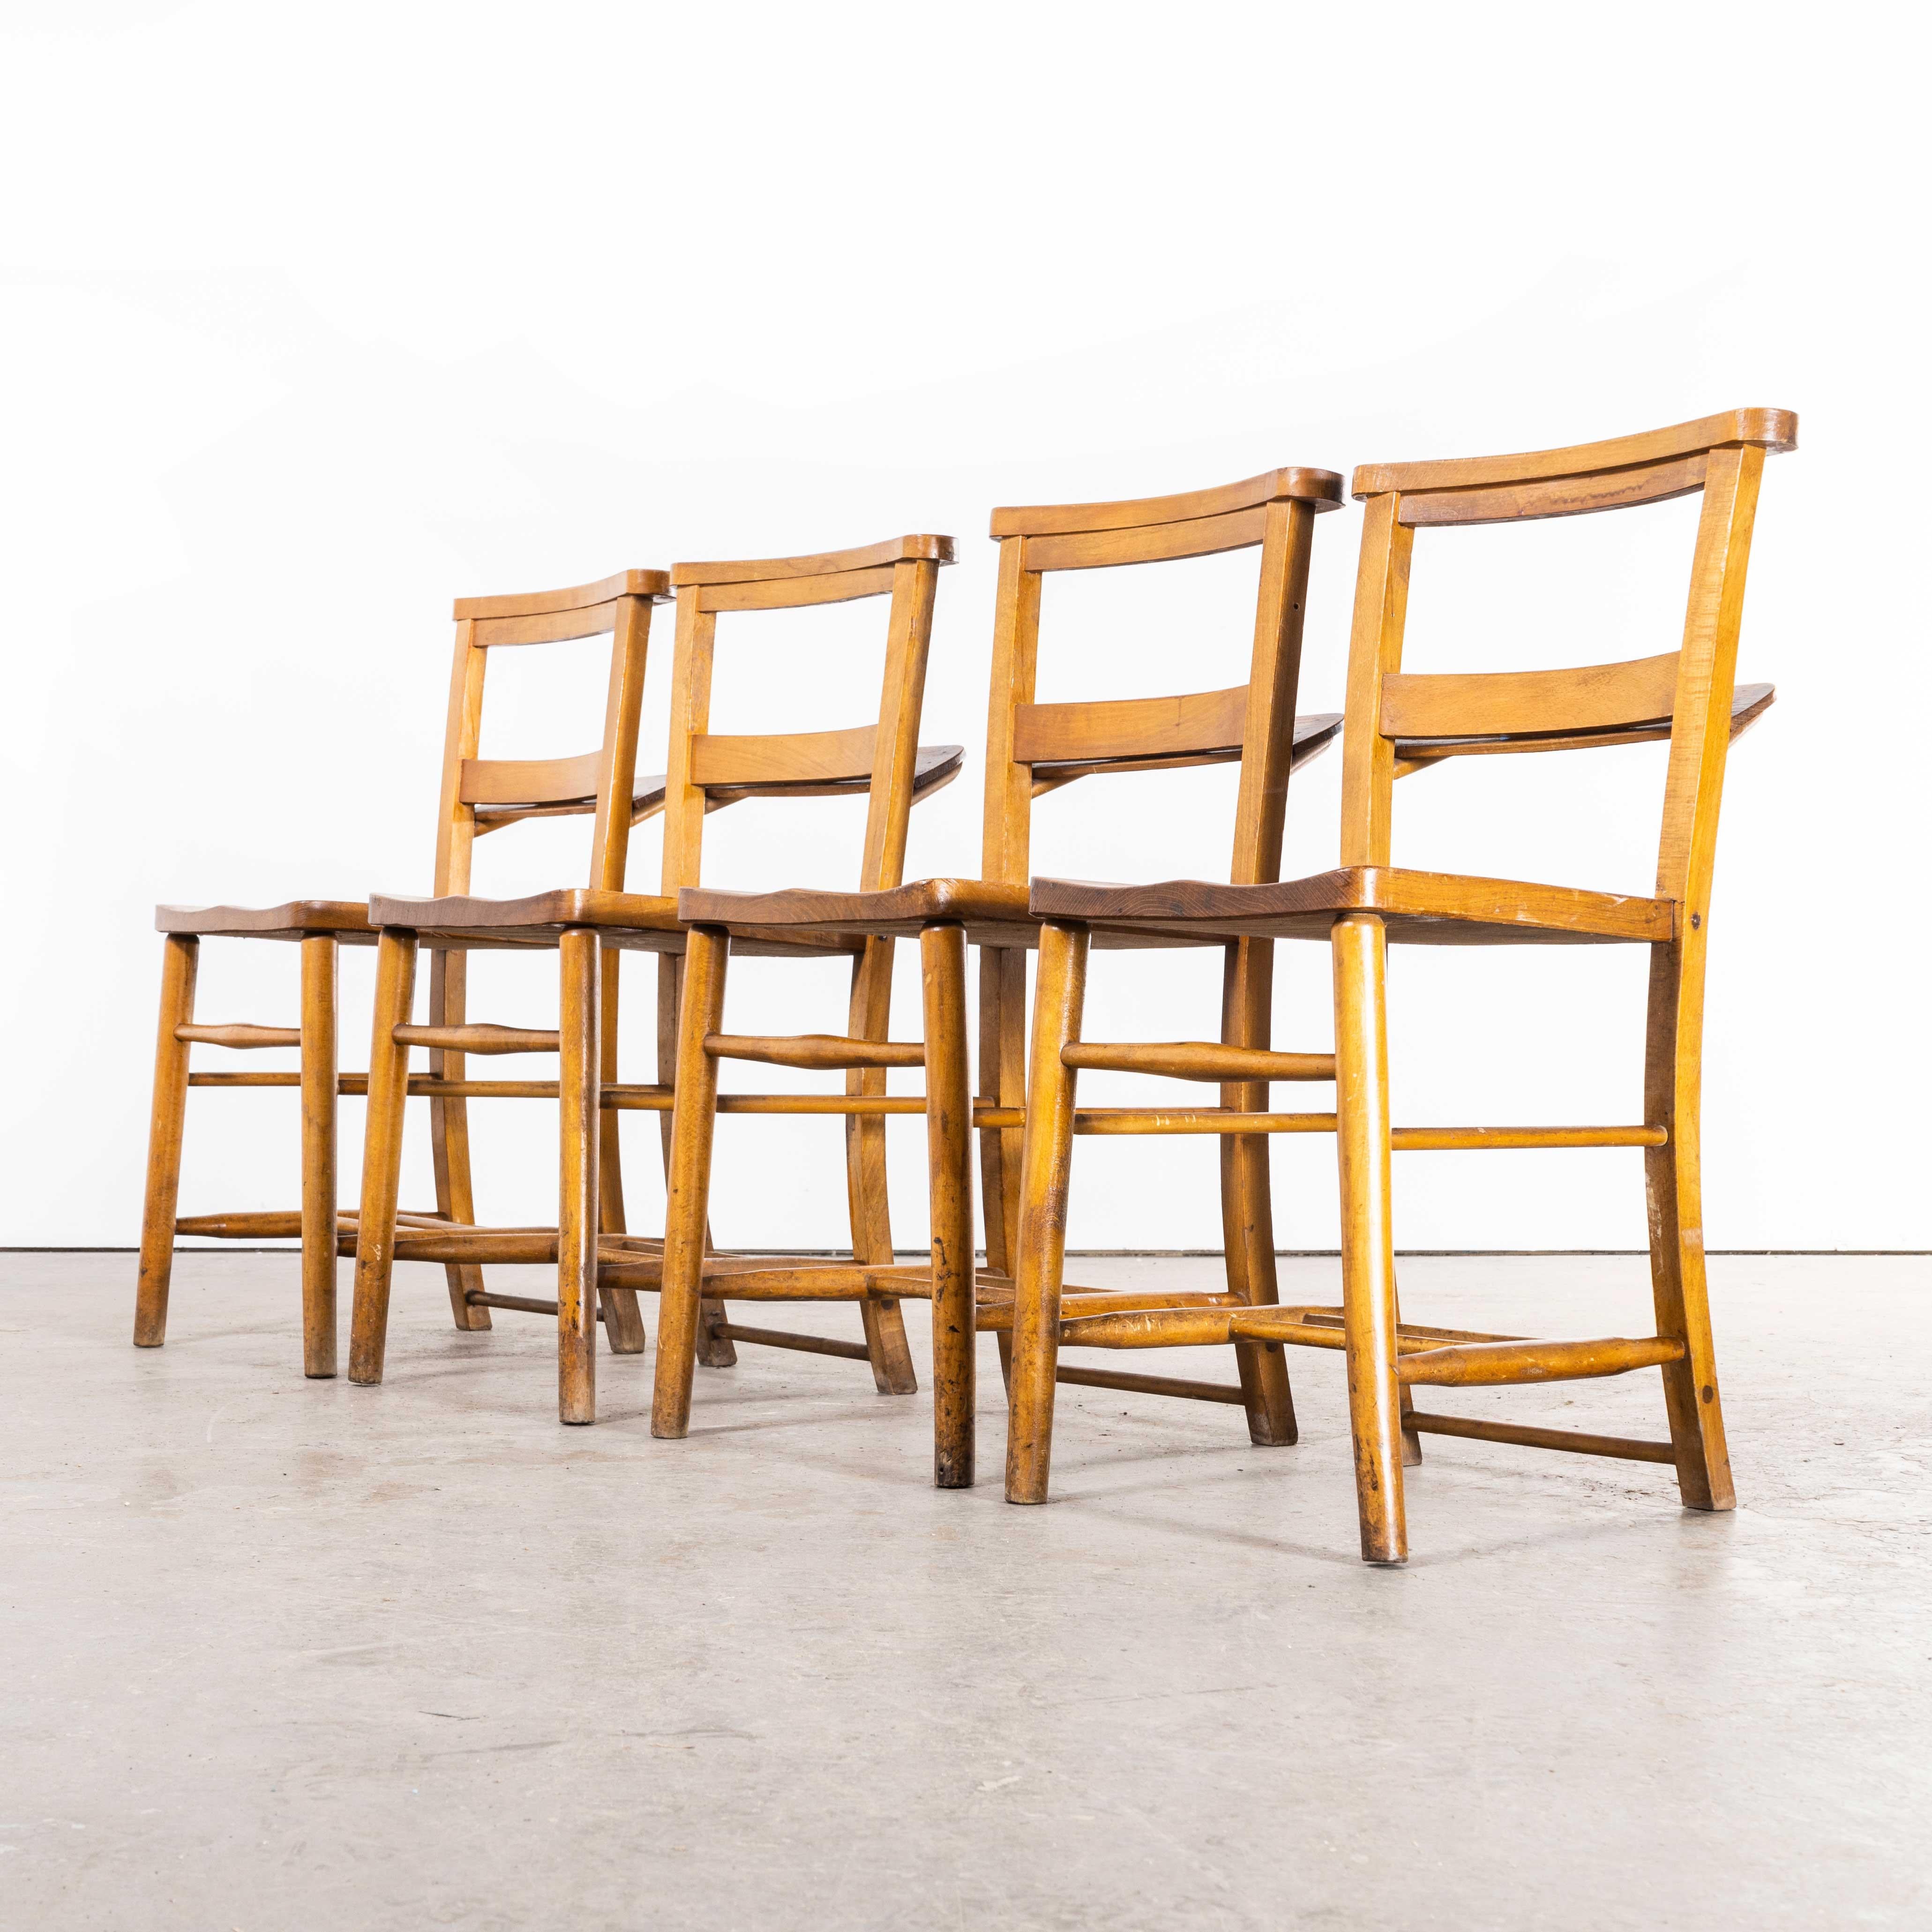 Esszimmerstuhl aus Ulmenholz aus den 1930er Jahren - Satz von vier Stühlen.
Esszimmerstuhl aus Ulmenholz aus den 1930er Jahren - Satz von vier Stühlen. England kann auf ein reiches Erbe in der Stuhlherstellung verweisen. Auf dem Höhepunkt der